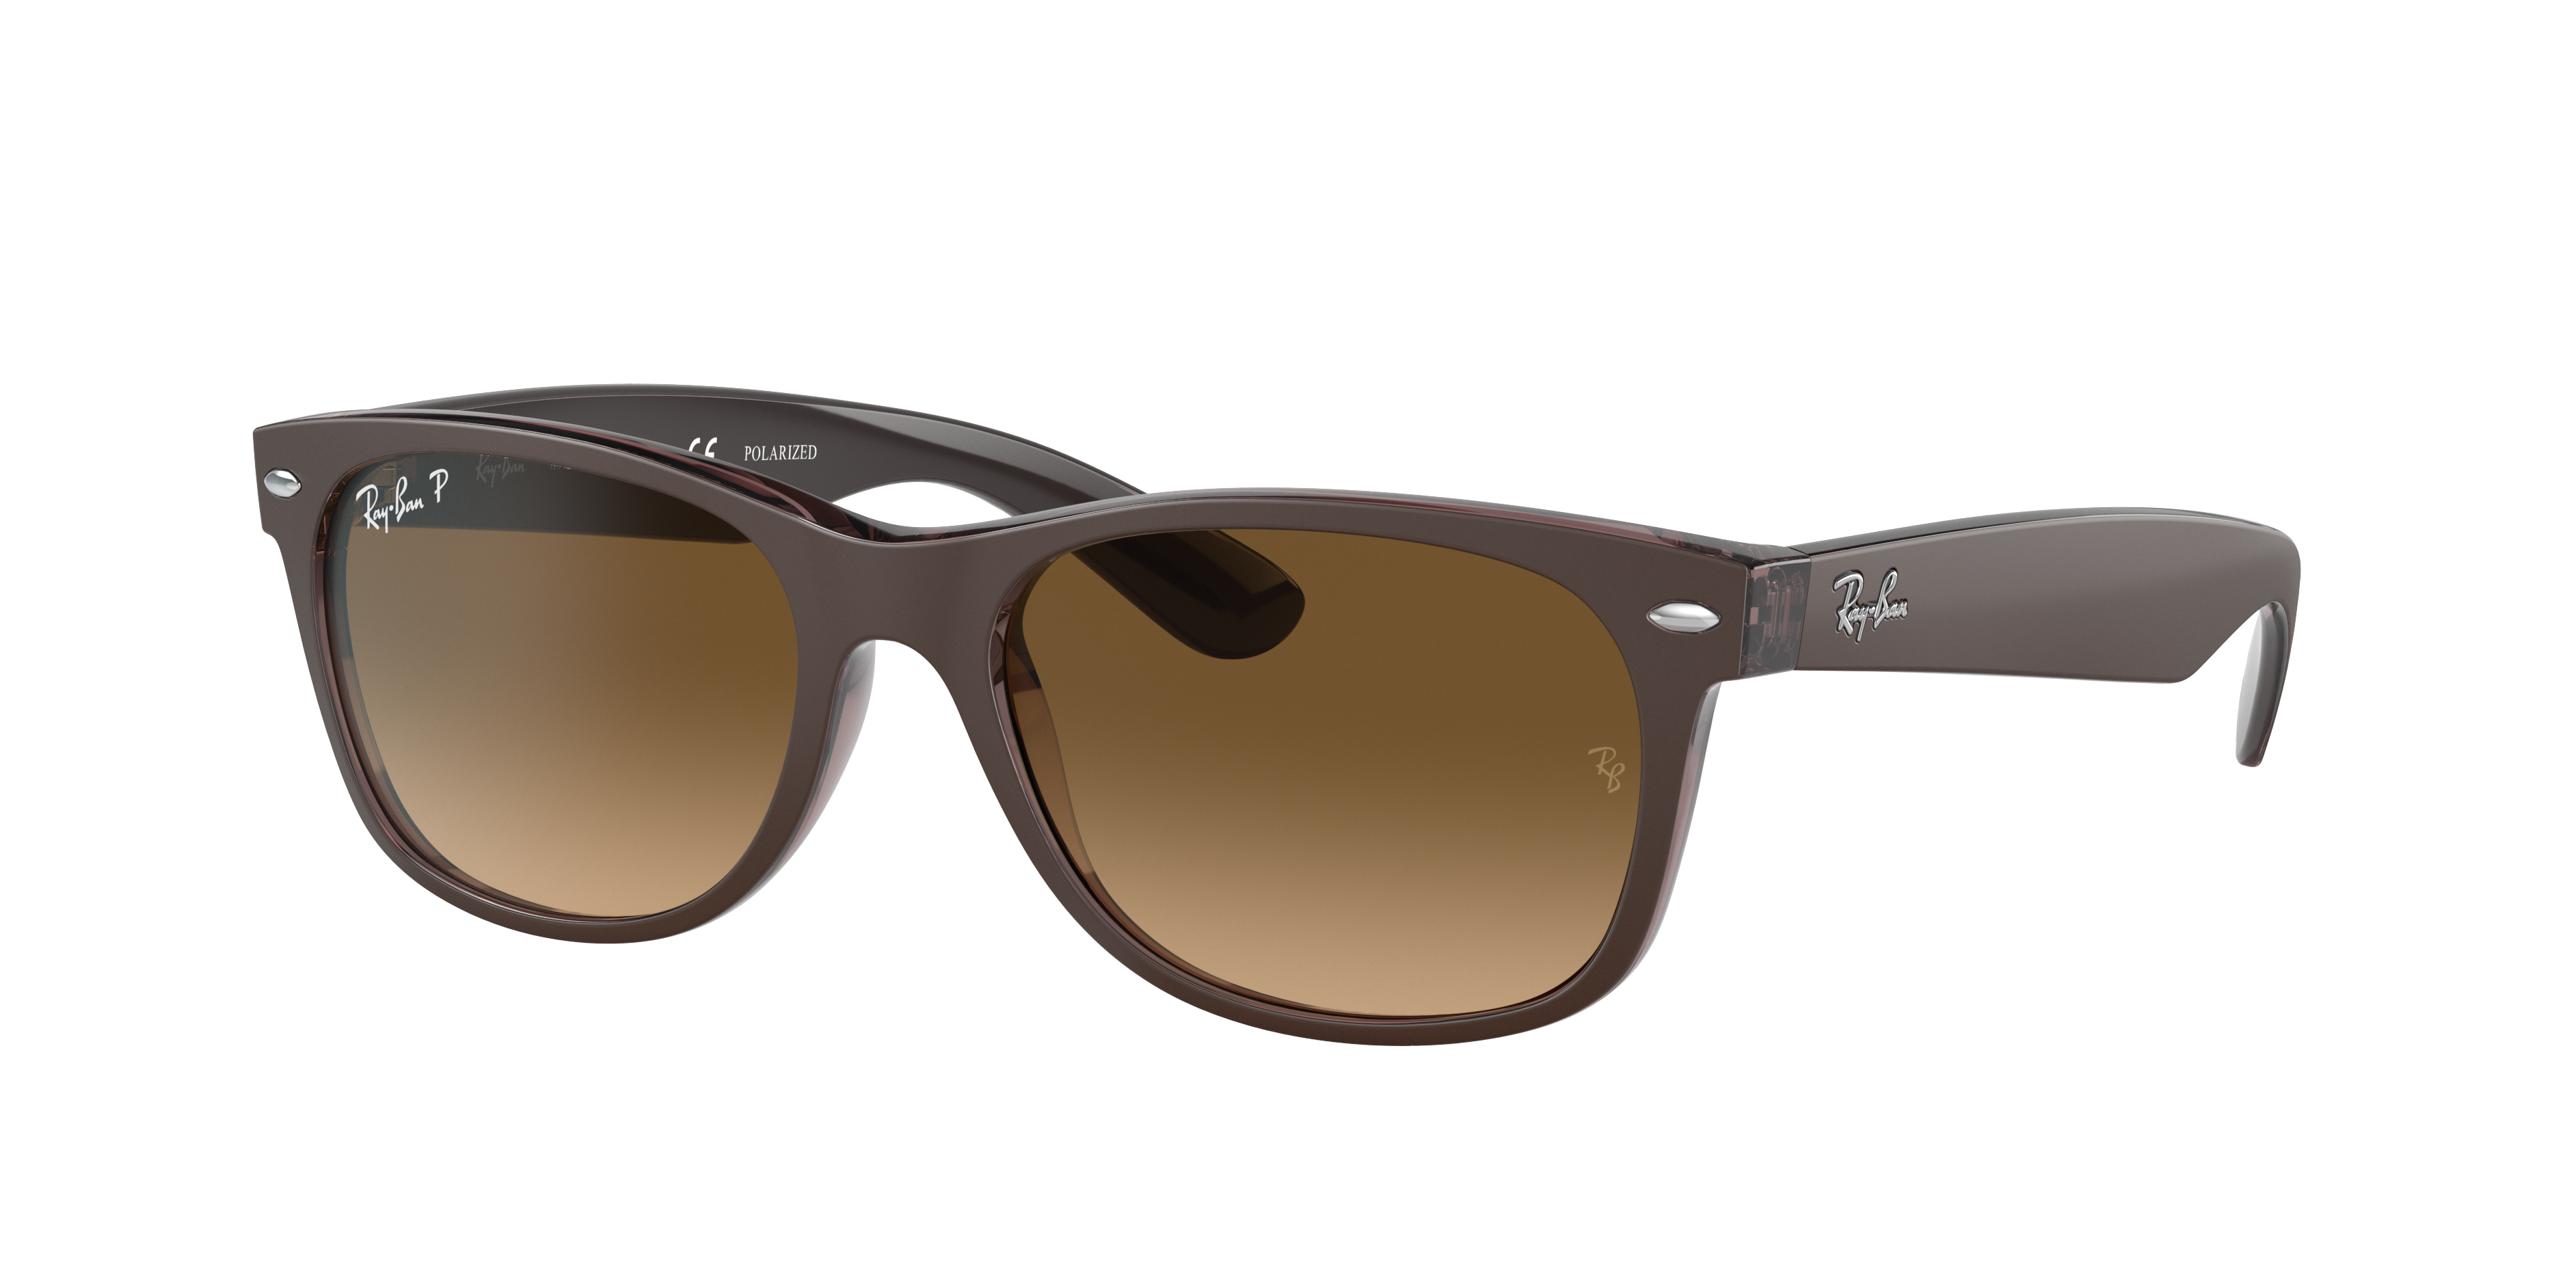 Boekhouder Onbelangrijk Atlantische Oceaan New Wayfarer Classic Sunglasses in Transparent Brown and Brown | Ray-Ban®